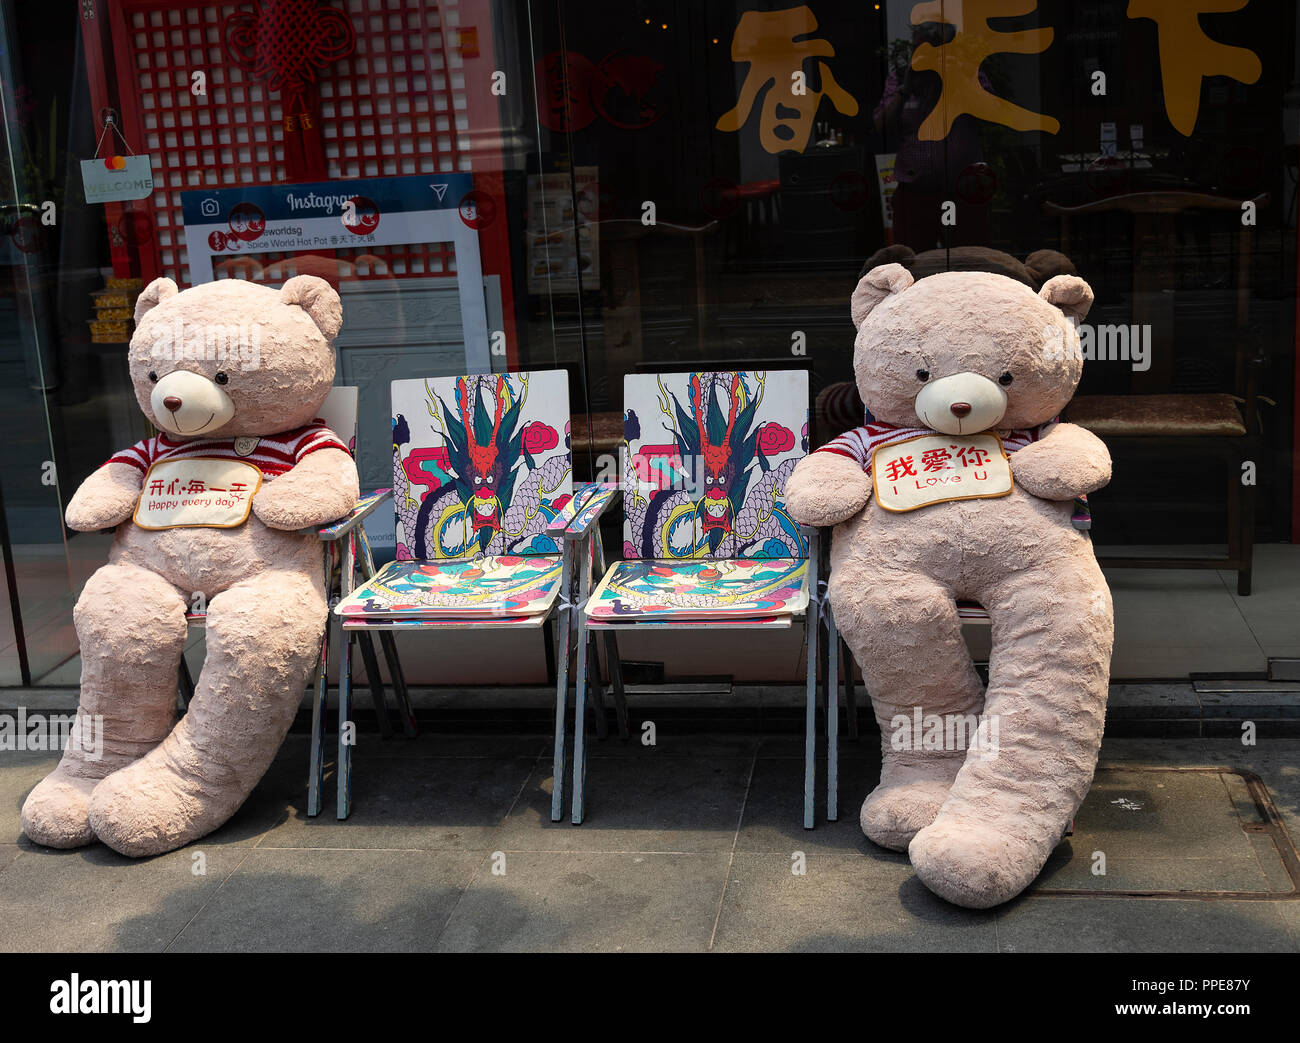 Deux belles grandes équilibrées à l'ours assis sur des chaises colorées Spice World Hot Spot Restaurant Sichuan dans Clarke Quay Singapour Asie Banque D'Images